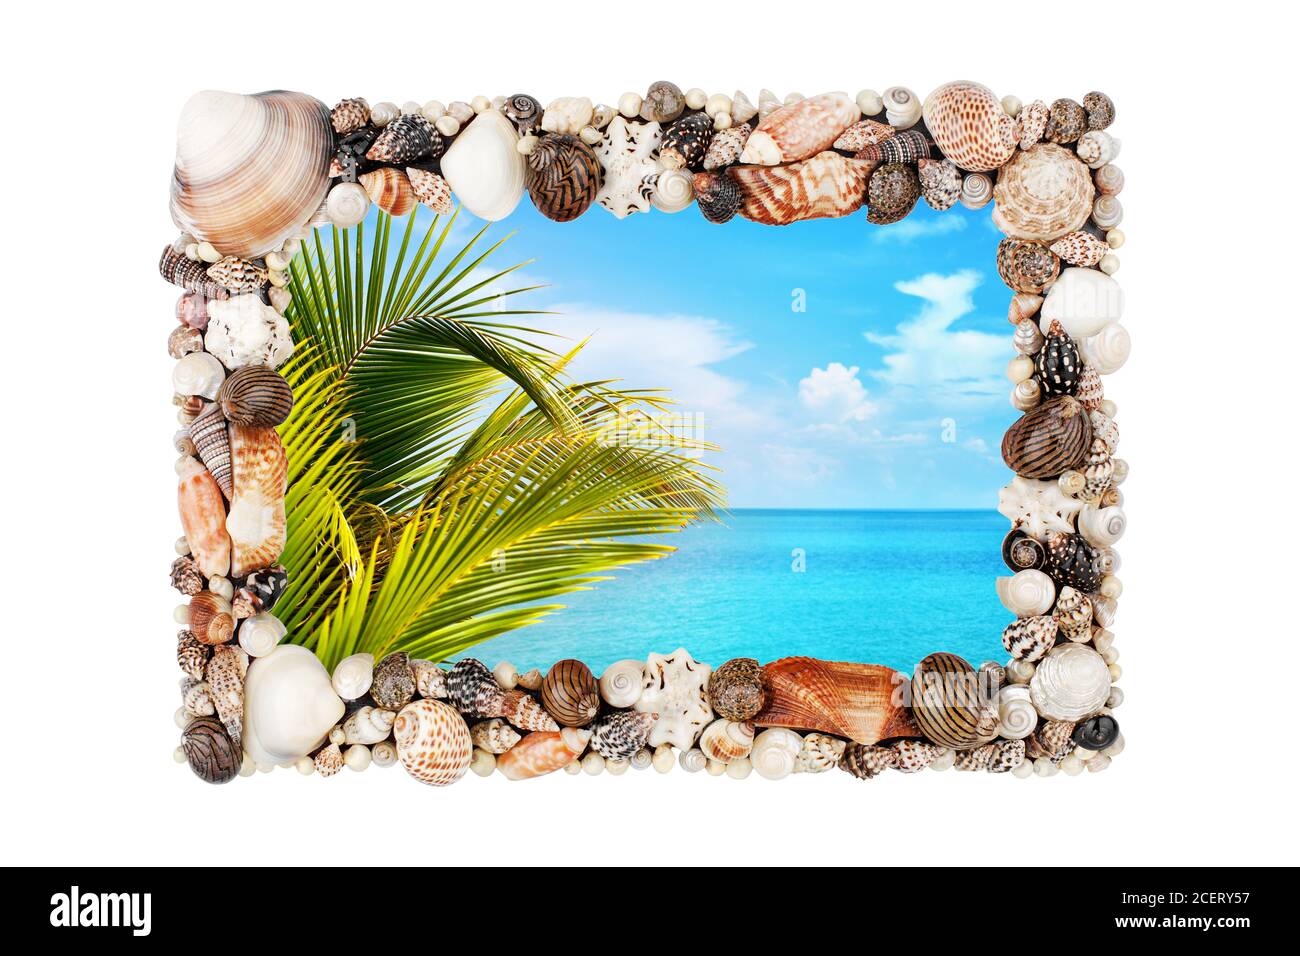 Muschelschalen Bilderrahmen weiß Hintergrund isoliert Nahaufnahme, Muscheln Bildergrenze, Sommer Strandurlaub, exotische tropische Insel Urlaub, grüne Palme Stockfoto